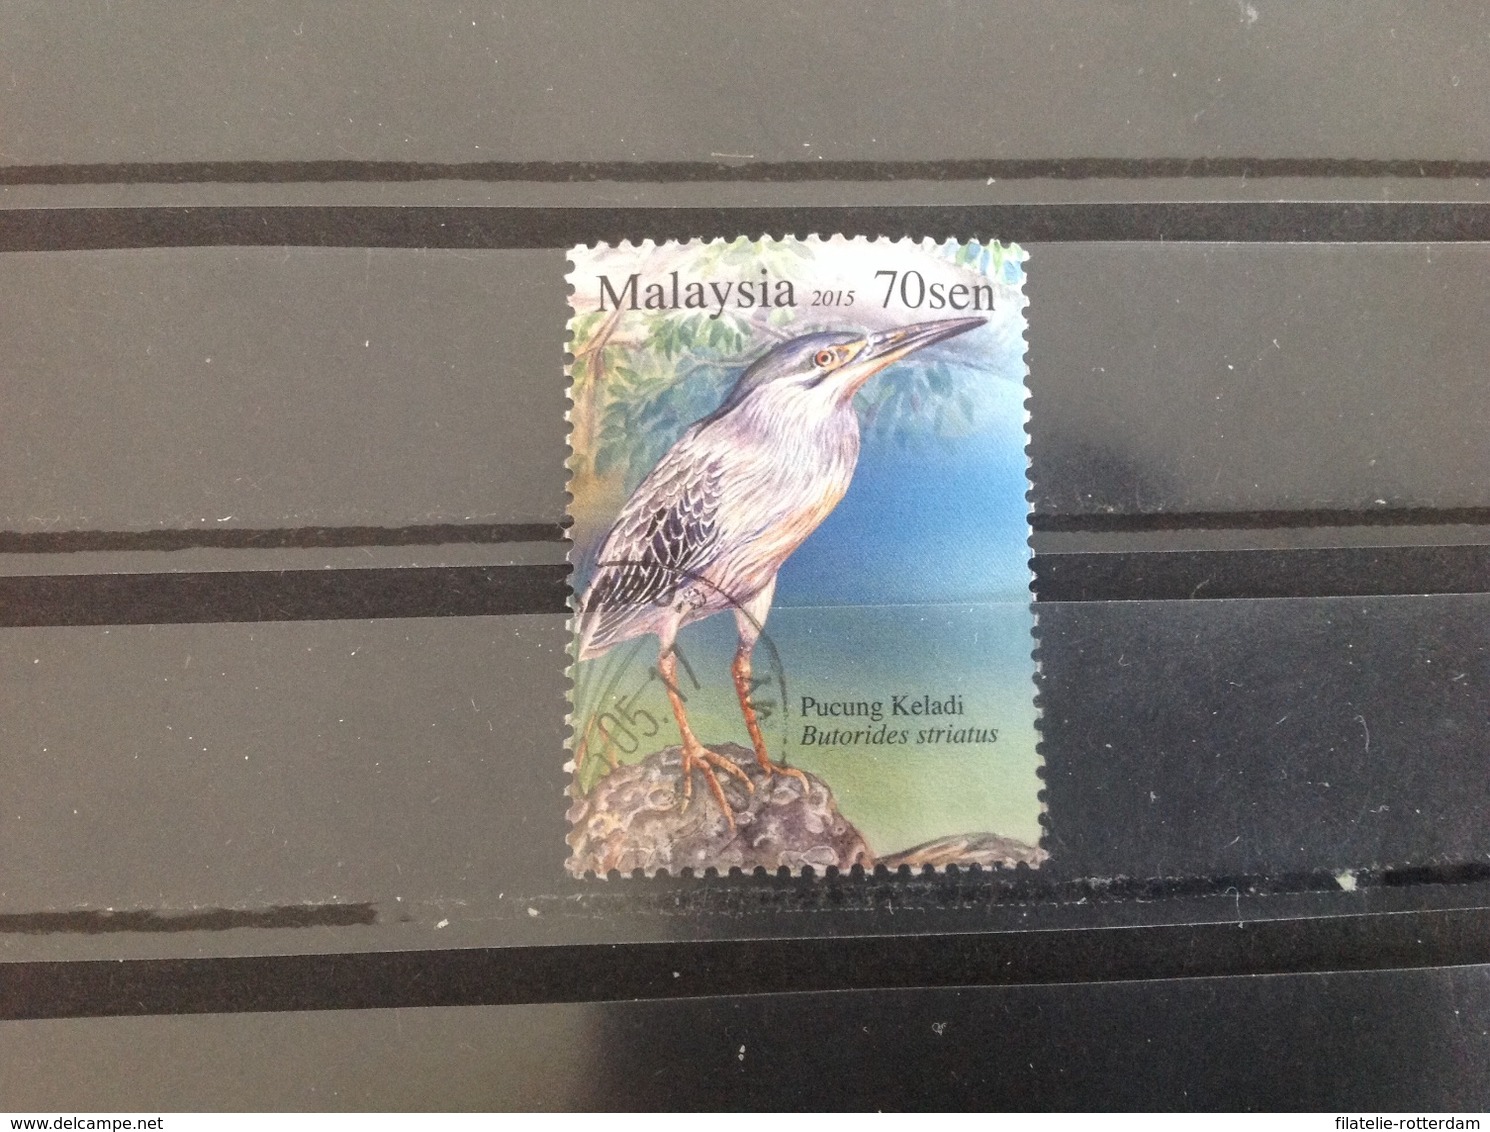 Maleisië / Malaysia - Vogels (70) 2015 - Maleisië (1964-...)